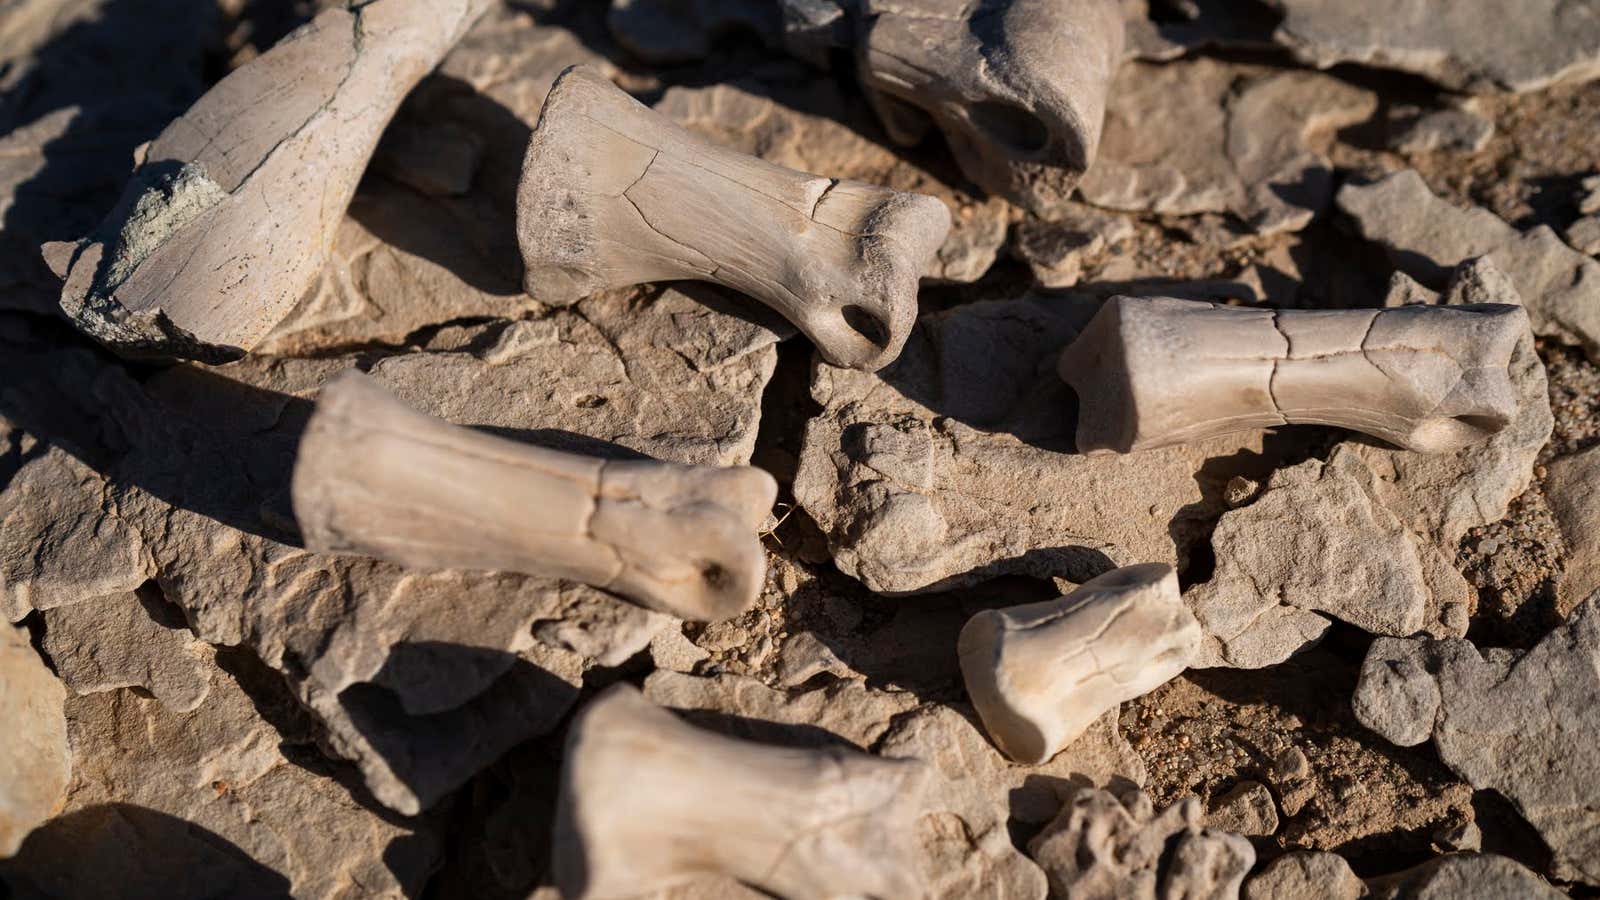 Bones found by drones.